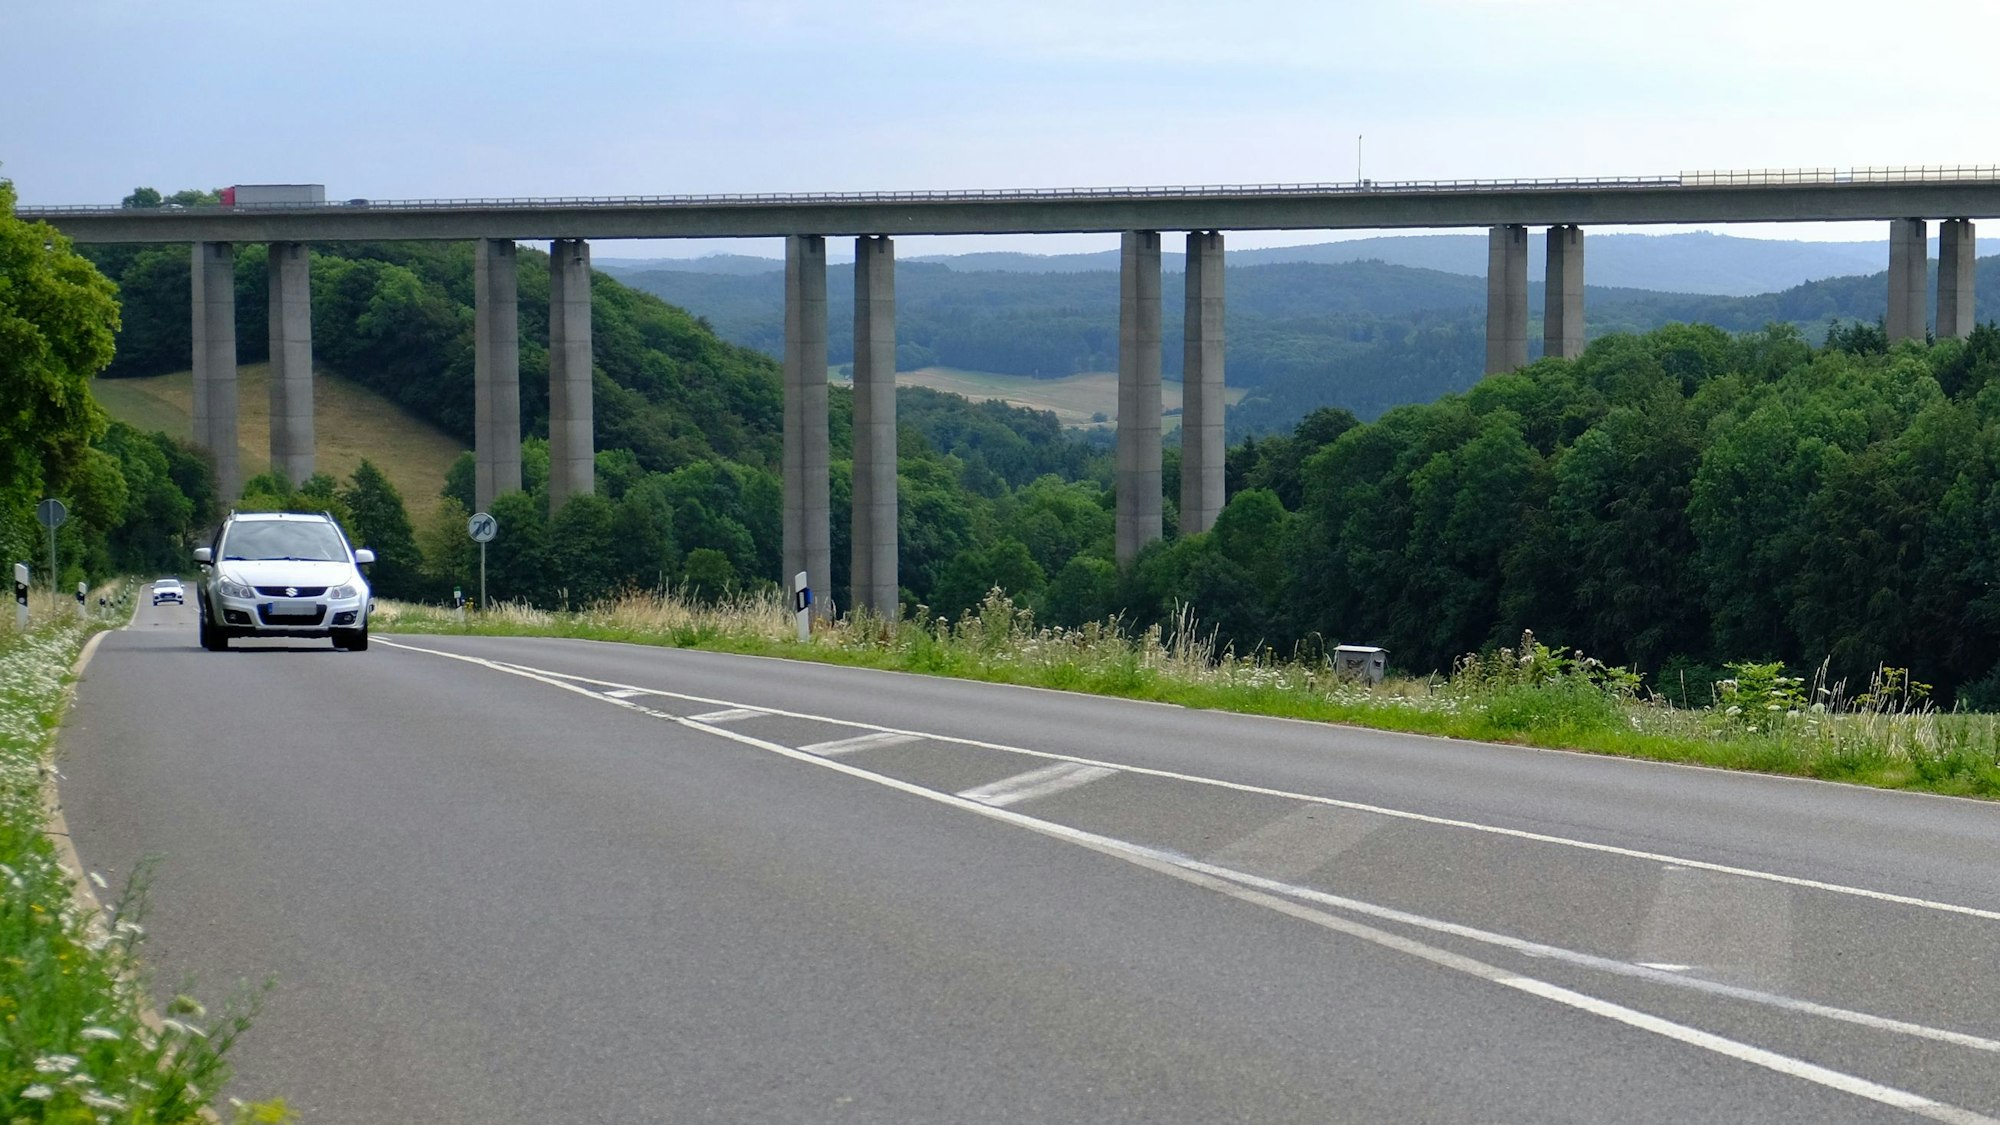 Das Bild zeigt die Talbrücke Zingsheimer Wald der Autobahn 1. Auf einer Landstraße, die unter der Brücke verläuft, sind zwei Autos unterwegs.